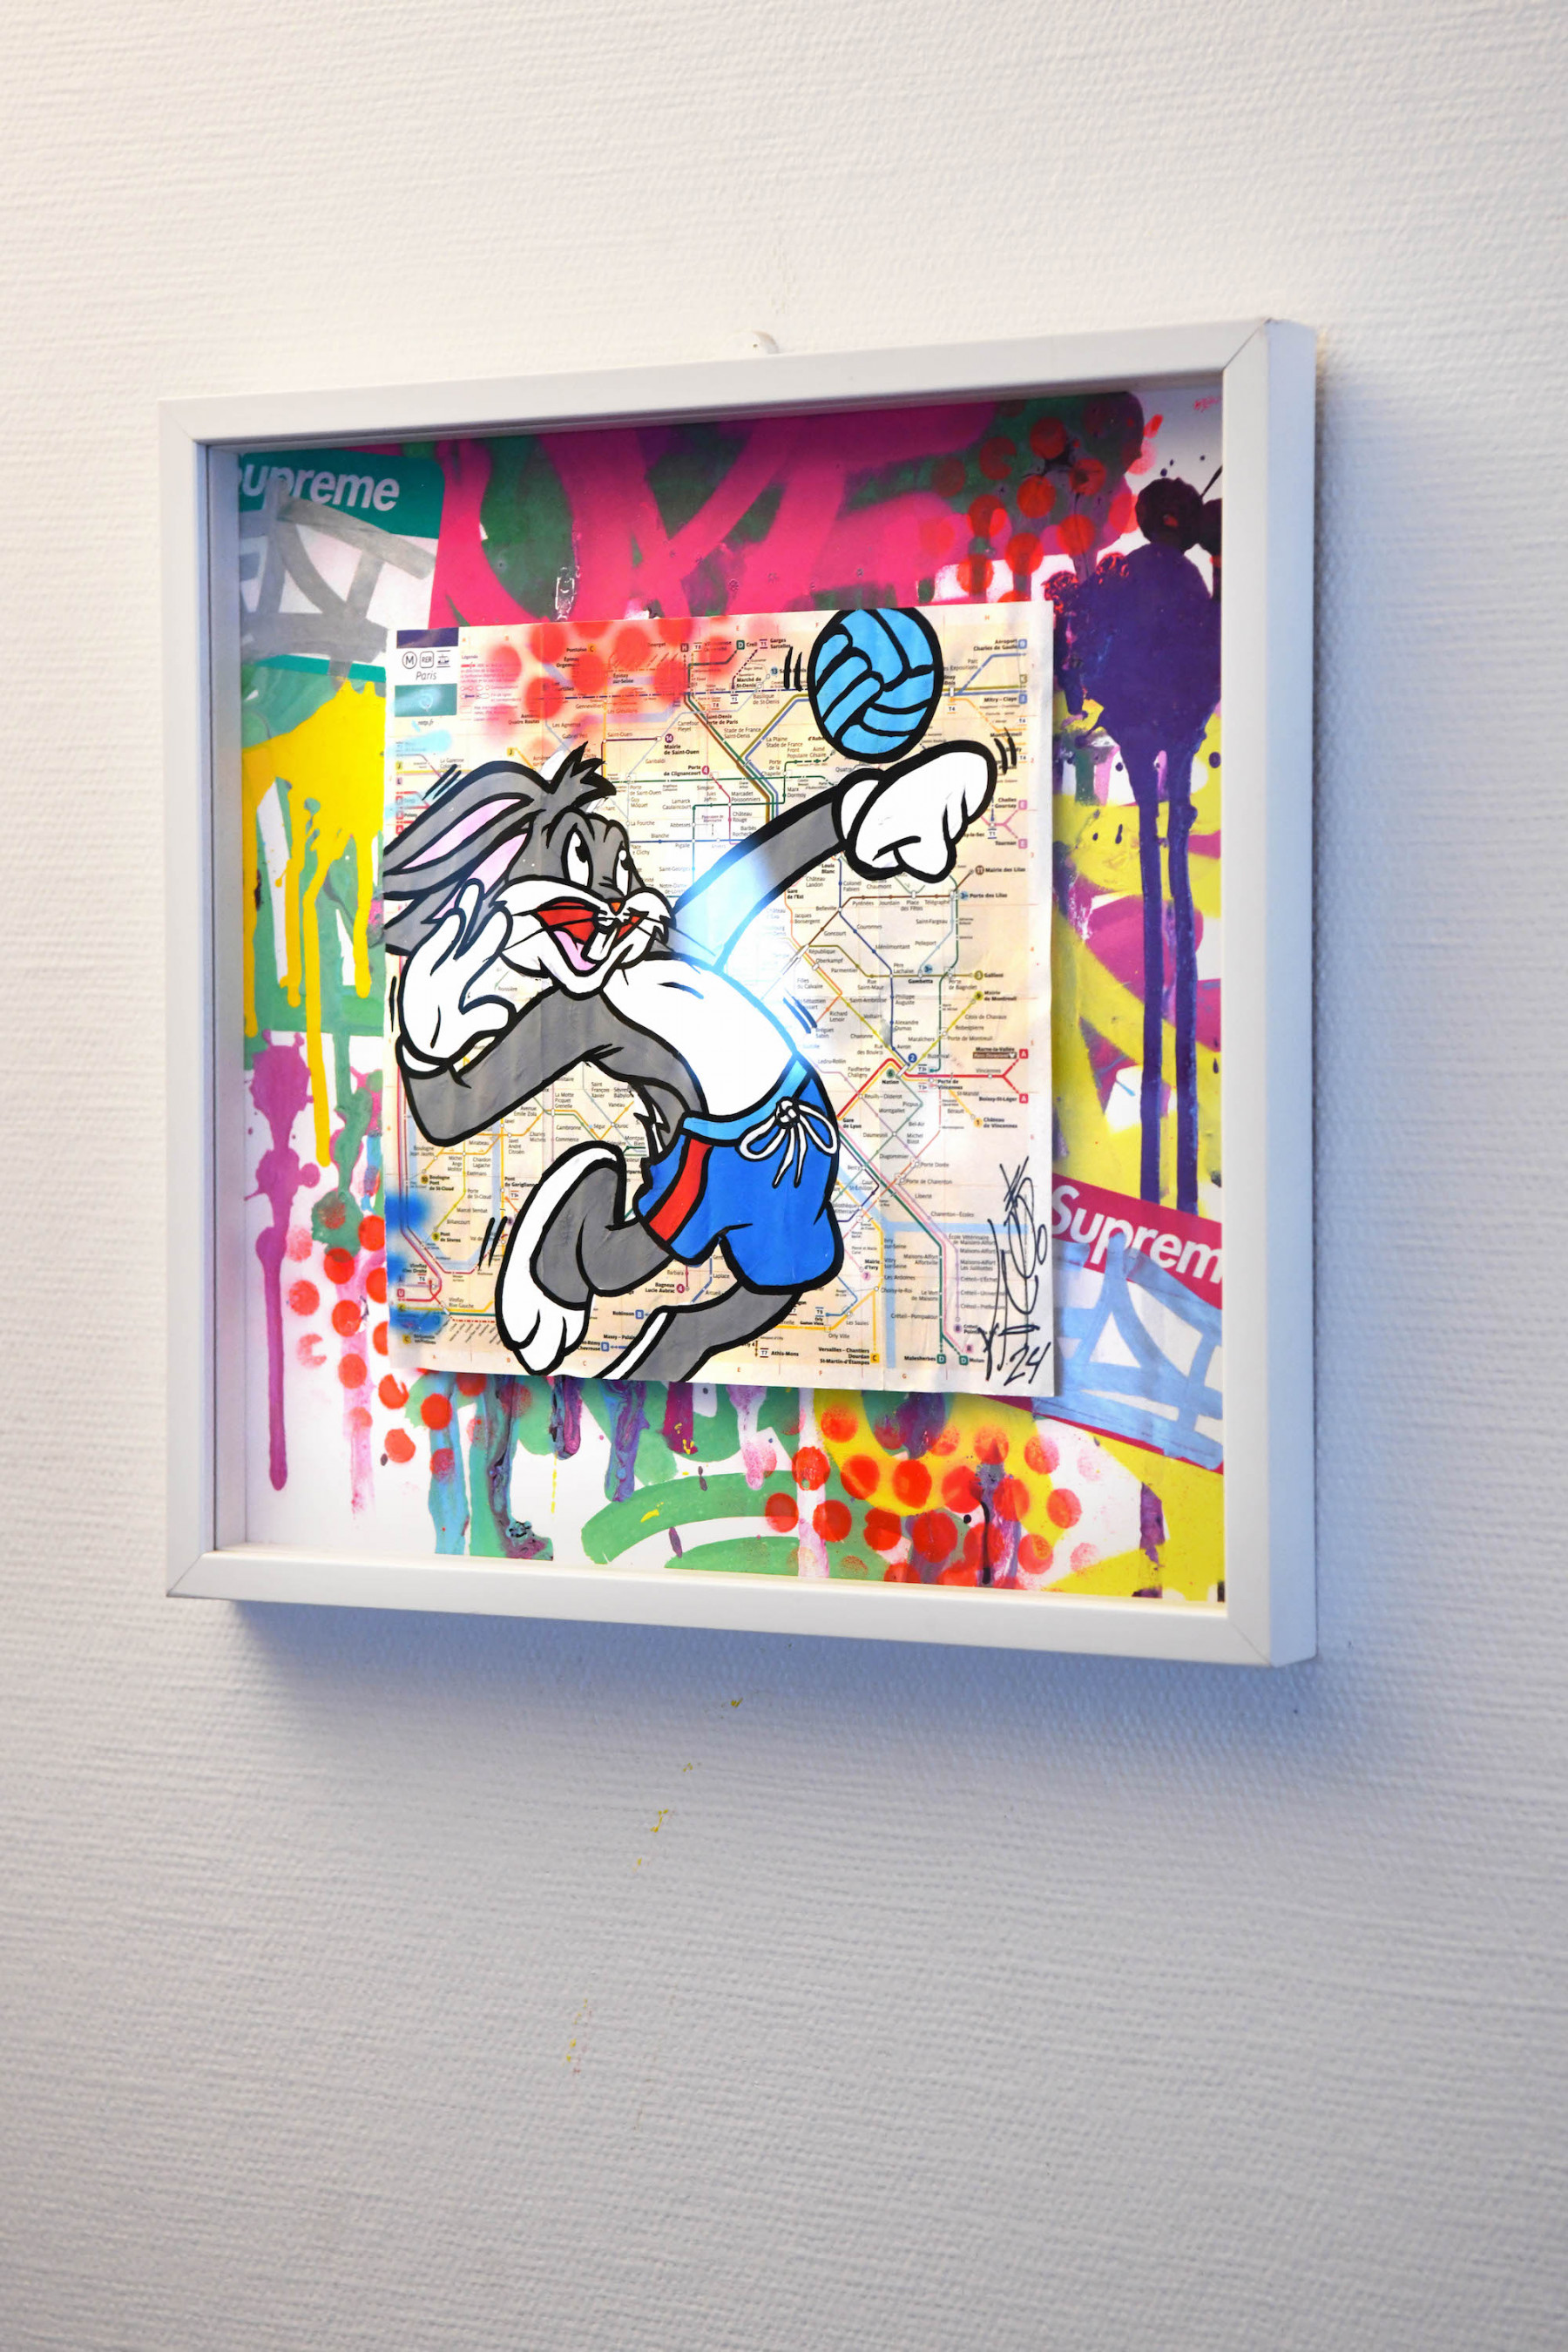 Fat, Bugs bunny, peinture - Galerie de vente et d’achat d’art contemporain en ligne Artalistic